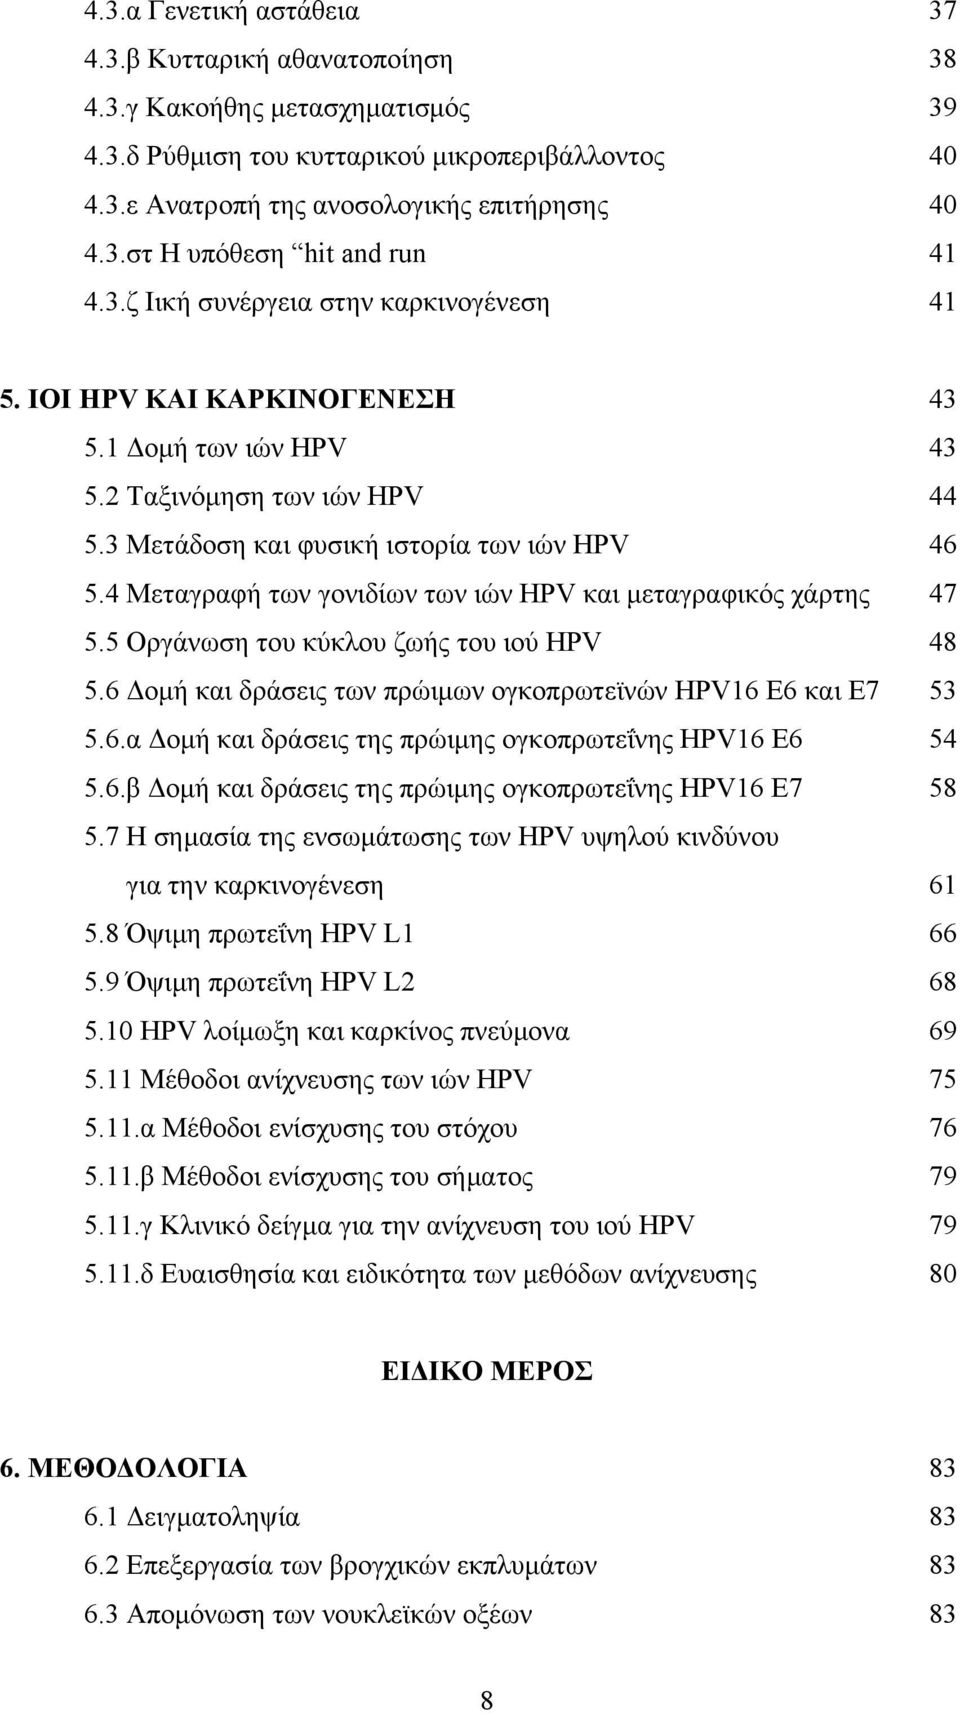 4 Μεταγραφή των γονιδίων των ιών HPV και μεταγραφικός χάρτης 47 5.5 Οργάνωση του κύκλου ζωής του ιού HPV 48 5.6 Δομή και δράσεις των πρώιμων ογκοπρωτεϊνών HPV16 E6 και E7 53 5.6.α Δομή και δράσεις της πρώιμης ογκοπρωτεΐνης HPV16 Ε6 54 5.